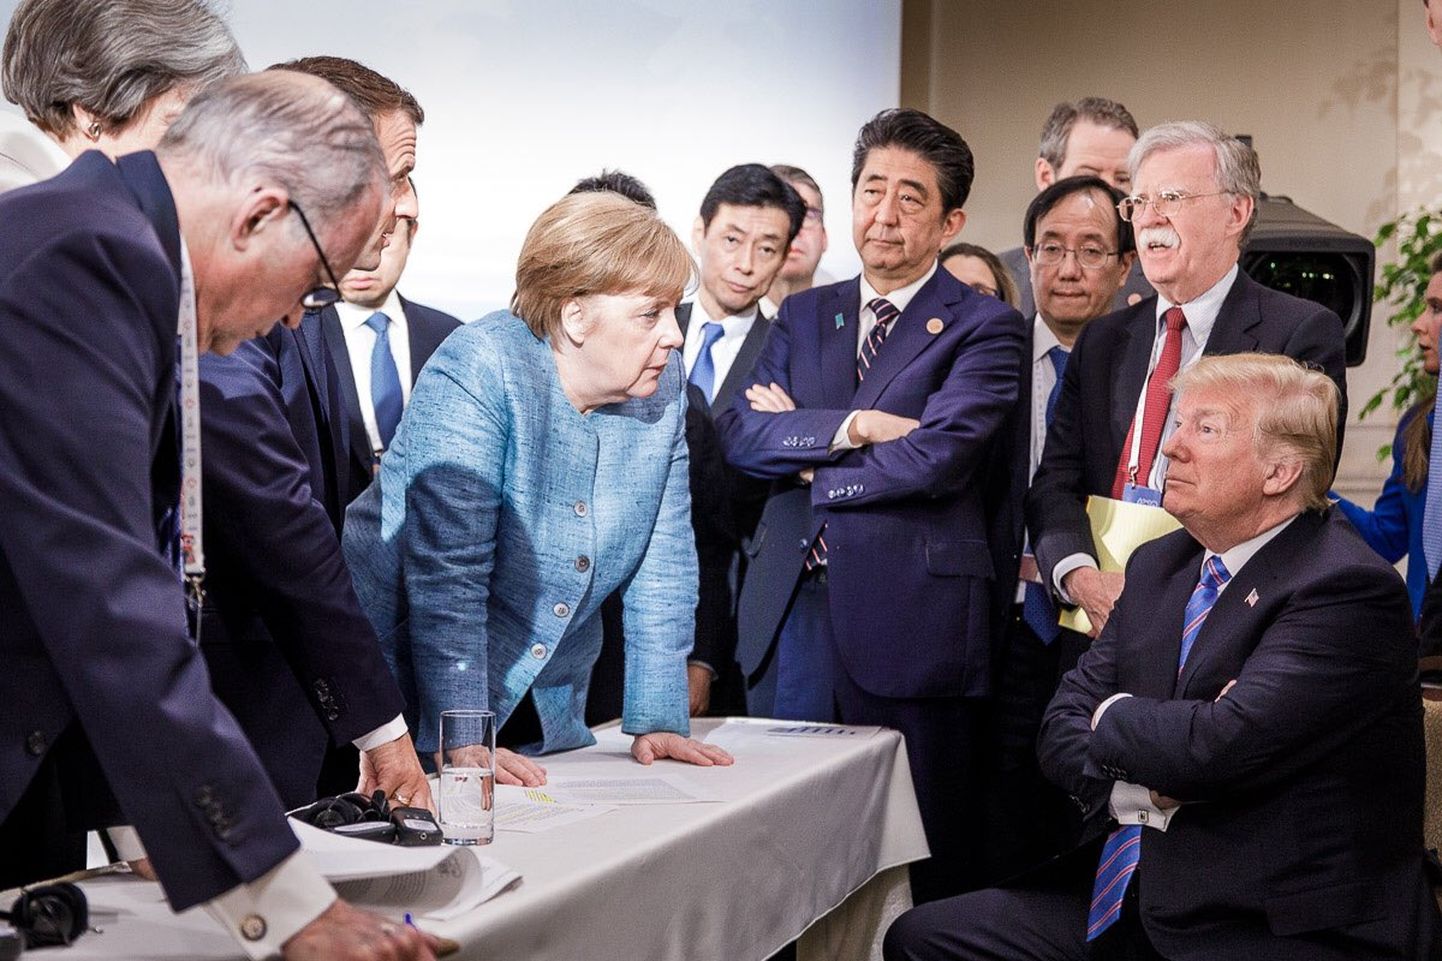 G7 tippkohtumisel kuulsaks saanud foto.